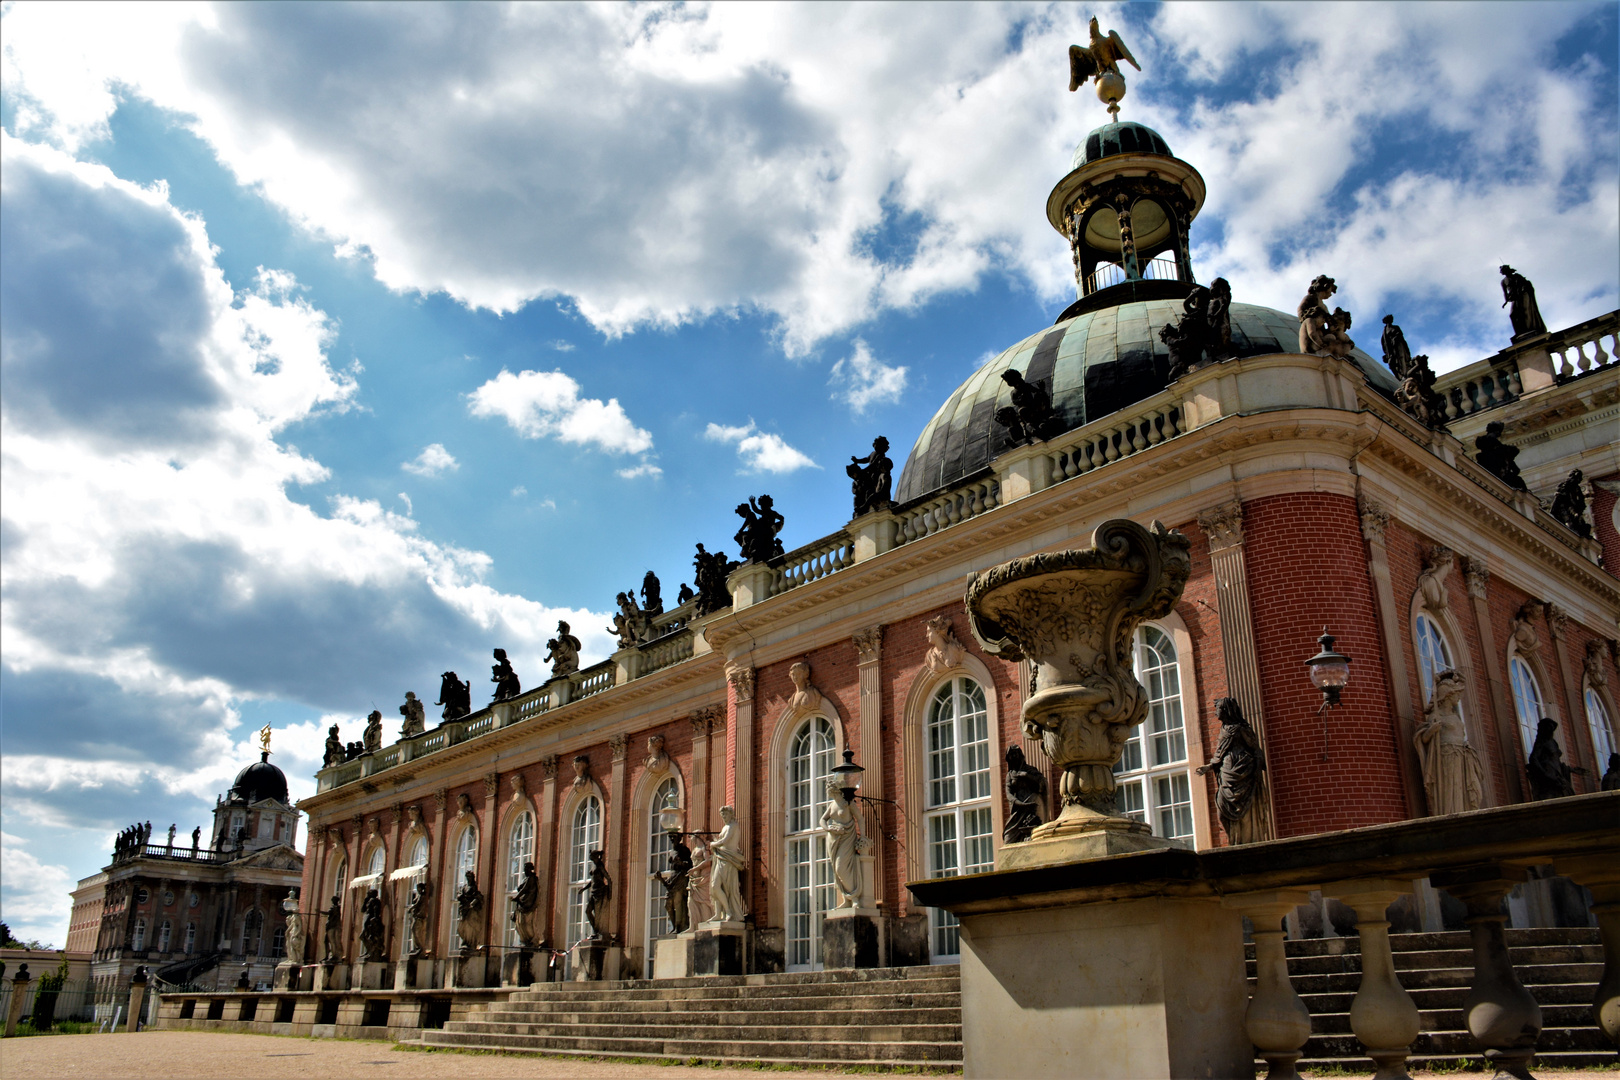 Neues Palais im Schlosspark Sanssouci